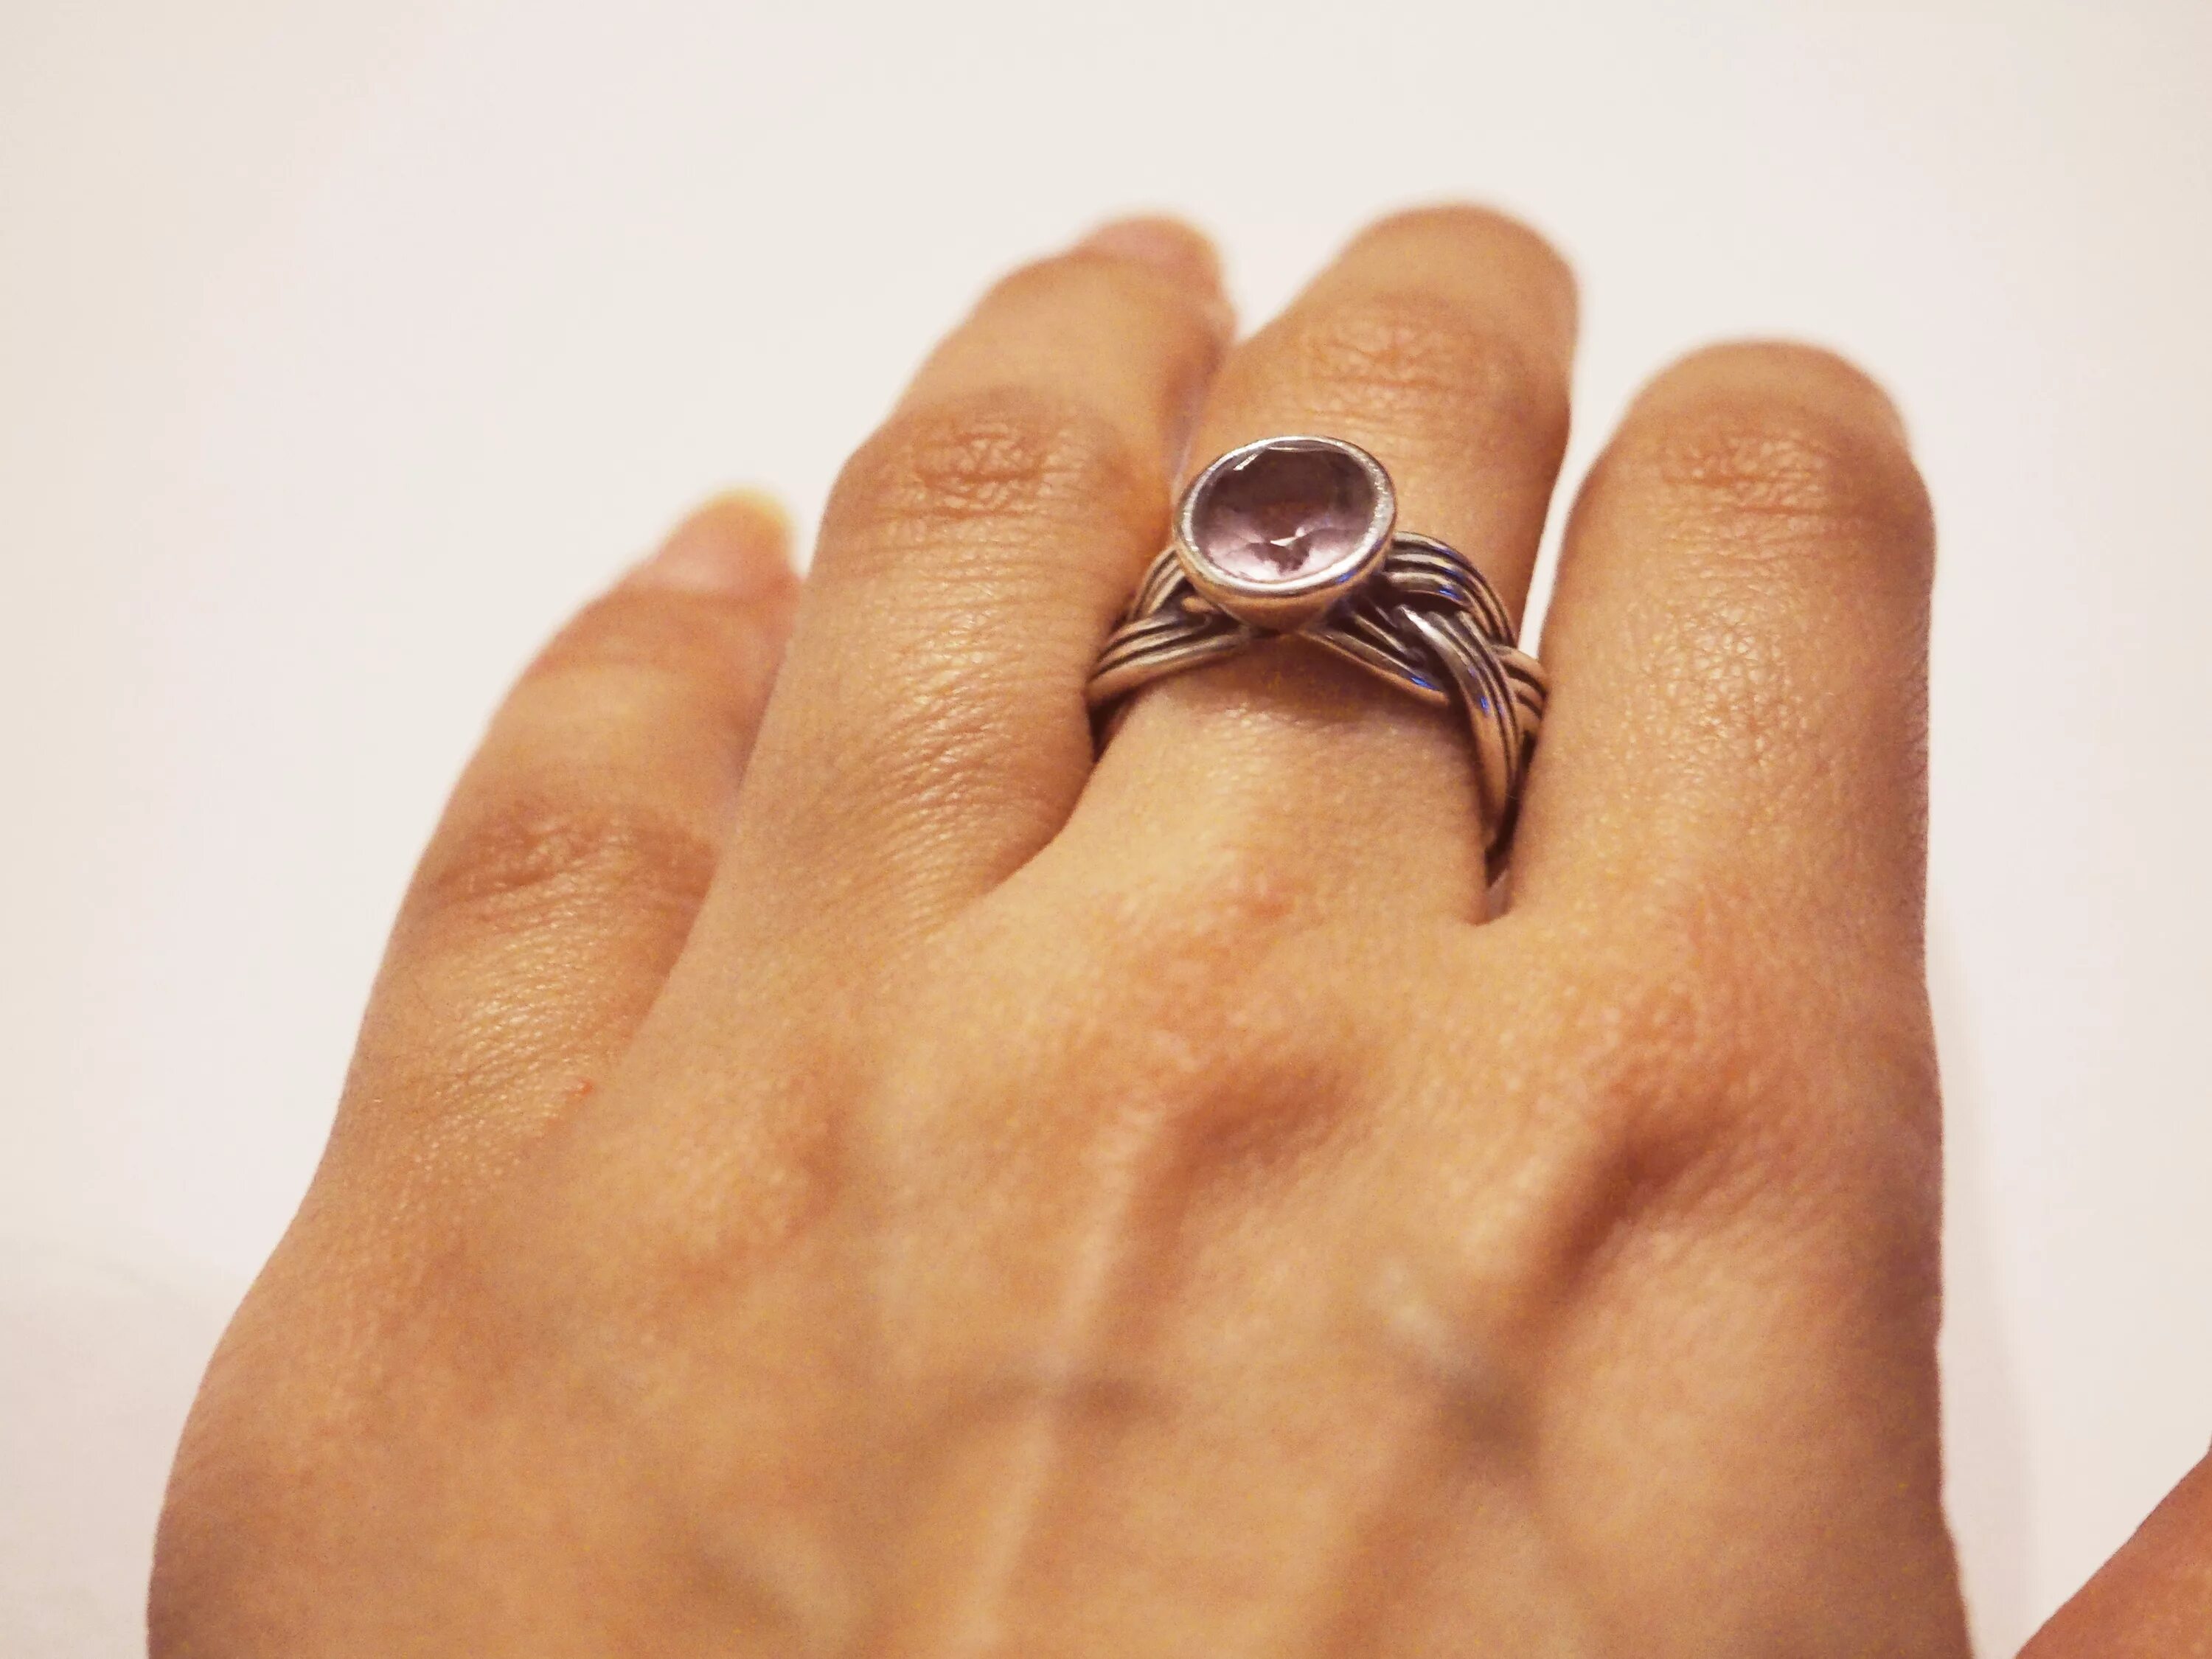 Перстень на руке. Кольцо на пальце. Кольцо на мизинец женское. Девушка с кольцом на пальце. Сон одели кольцо золотое кольцо